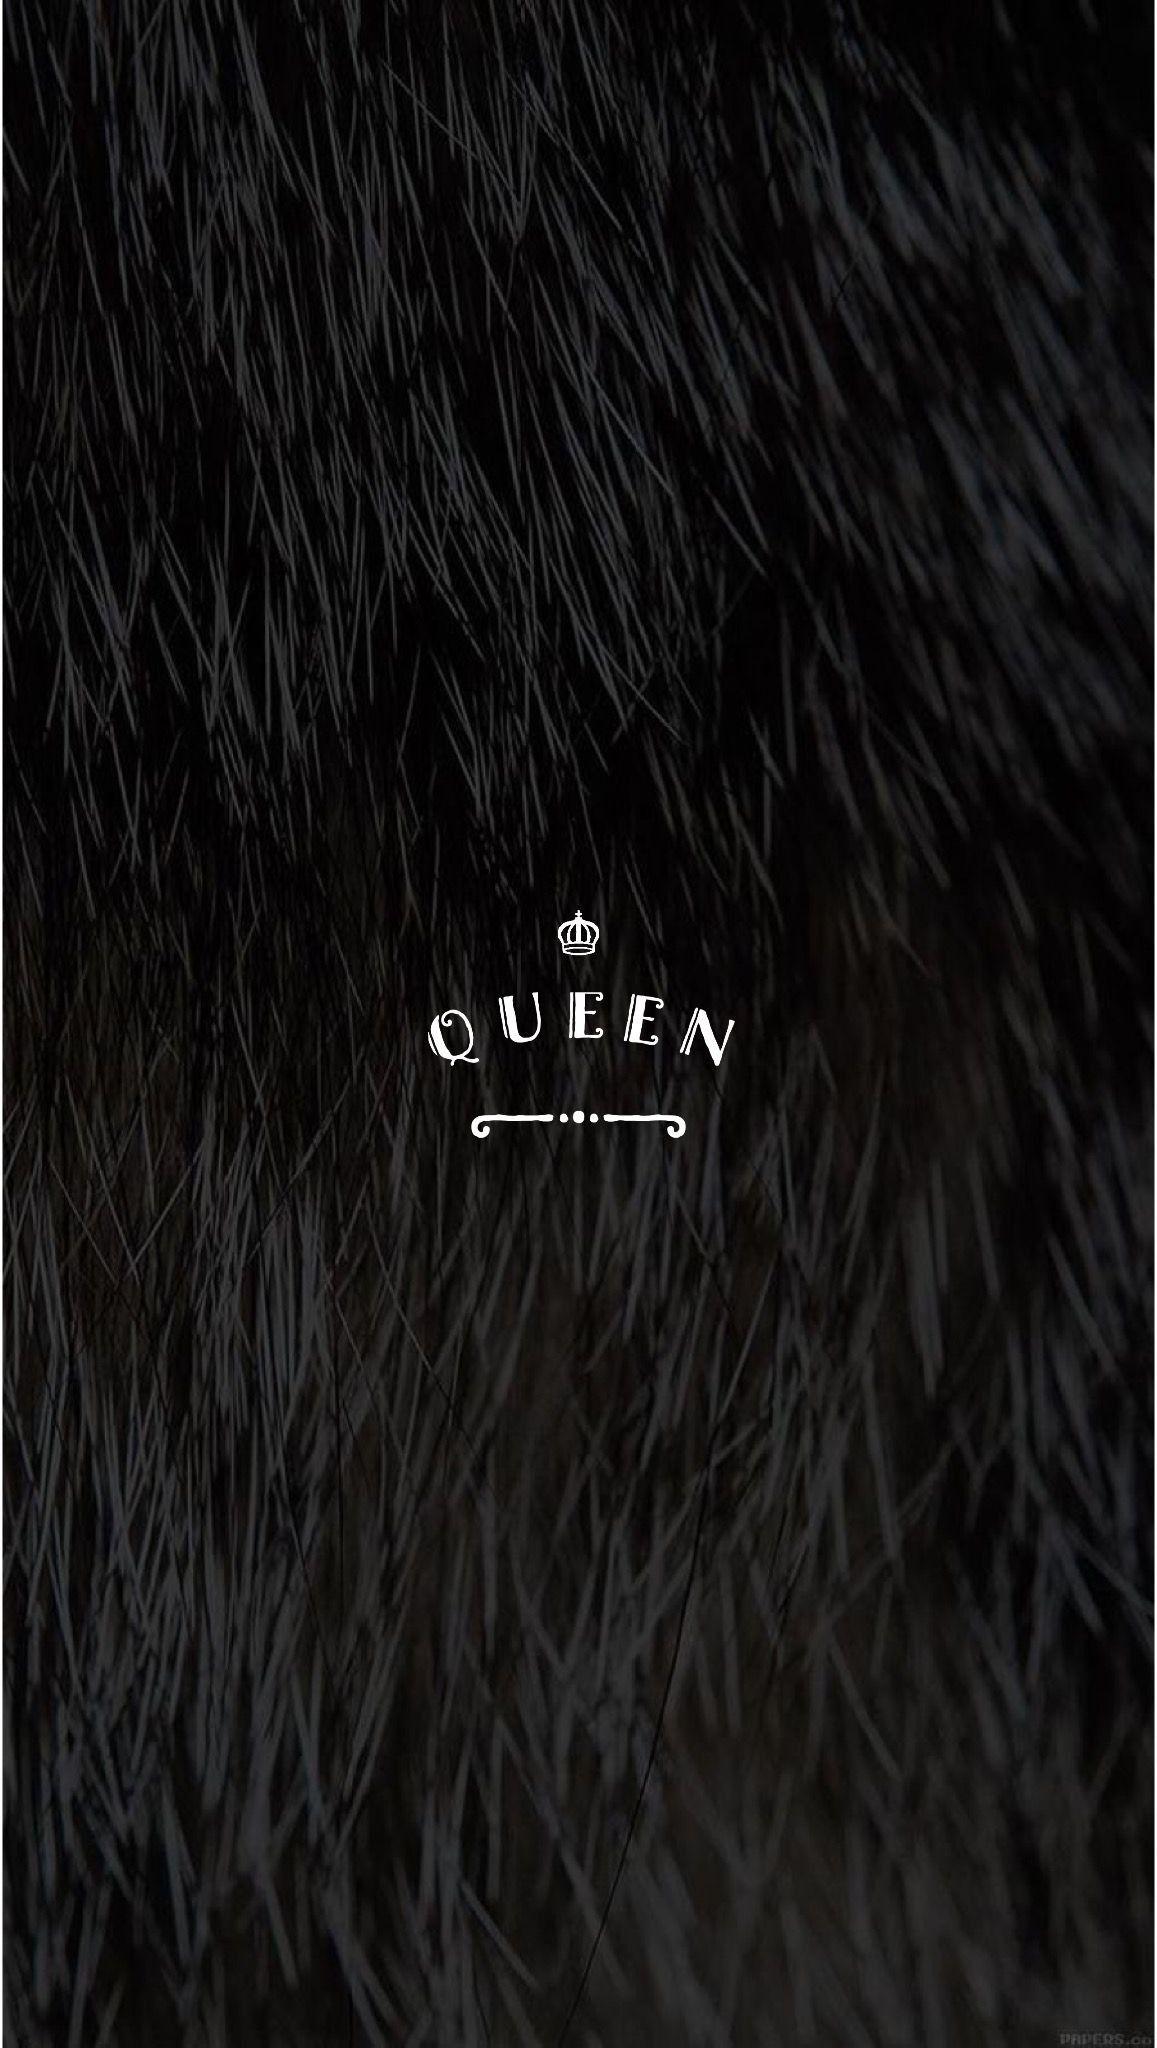 29+] Queen Wallpapers - WallpaperSafari